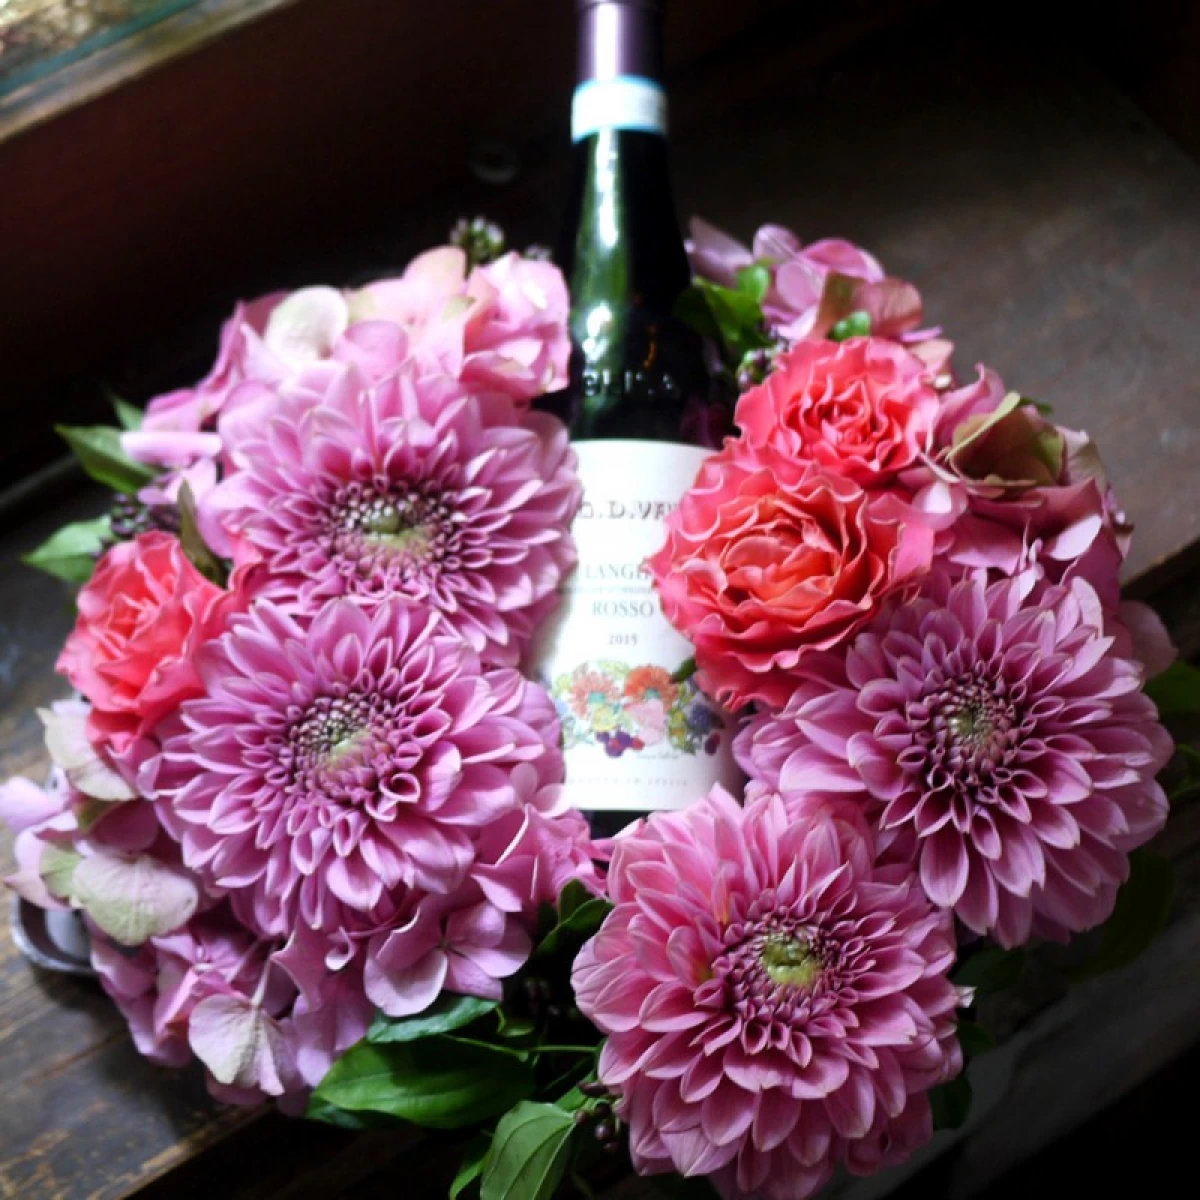 結婚祝い 還暦祝い[赤ワイン 生花 ギフト] 生花のフラワーリース と豊かな果実味イタリア産赤ワイン